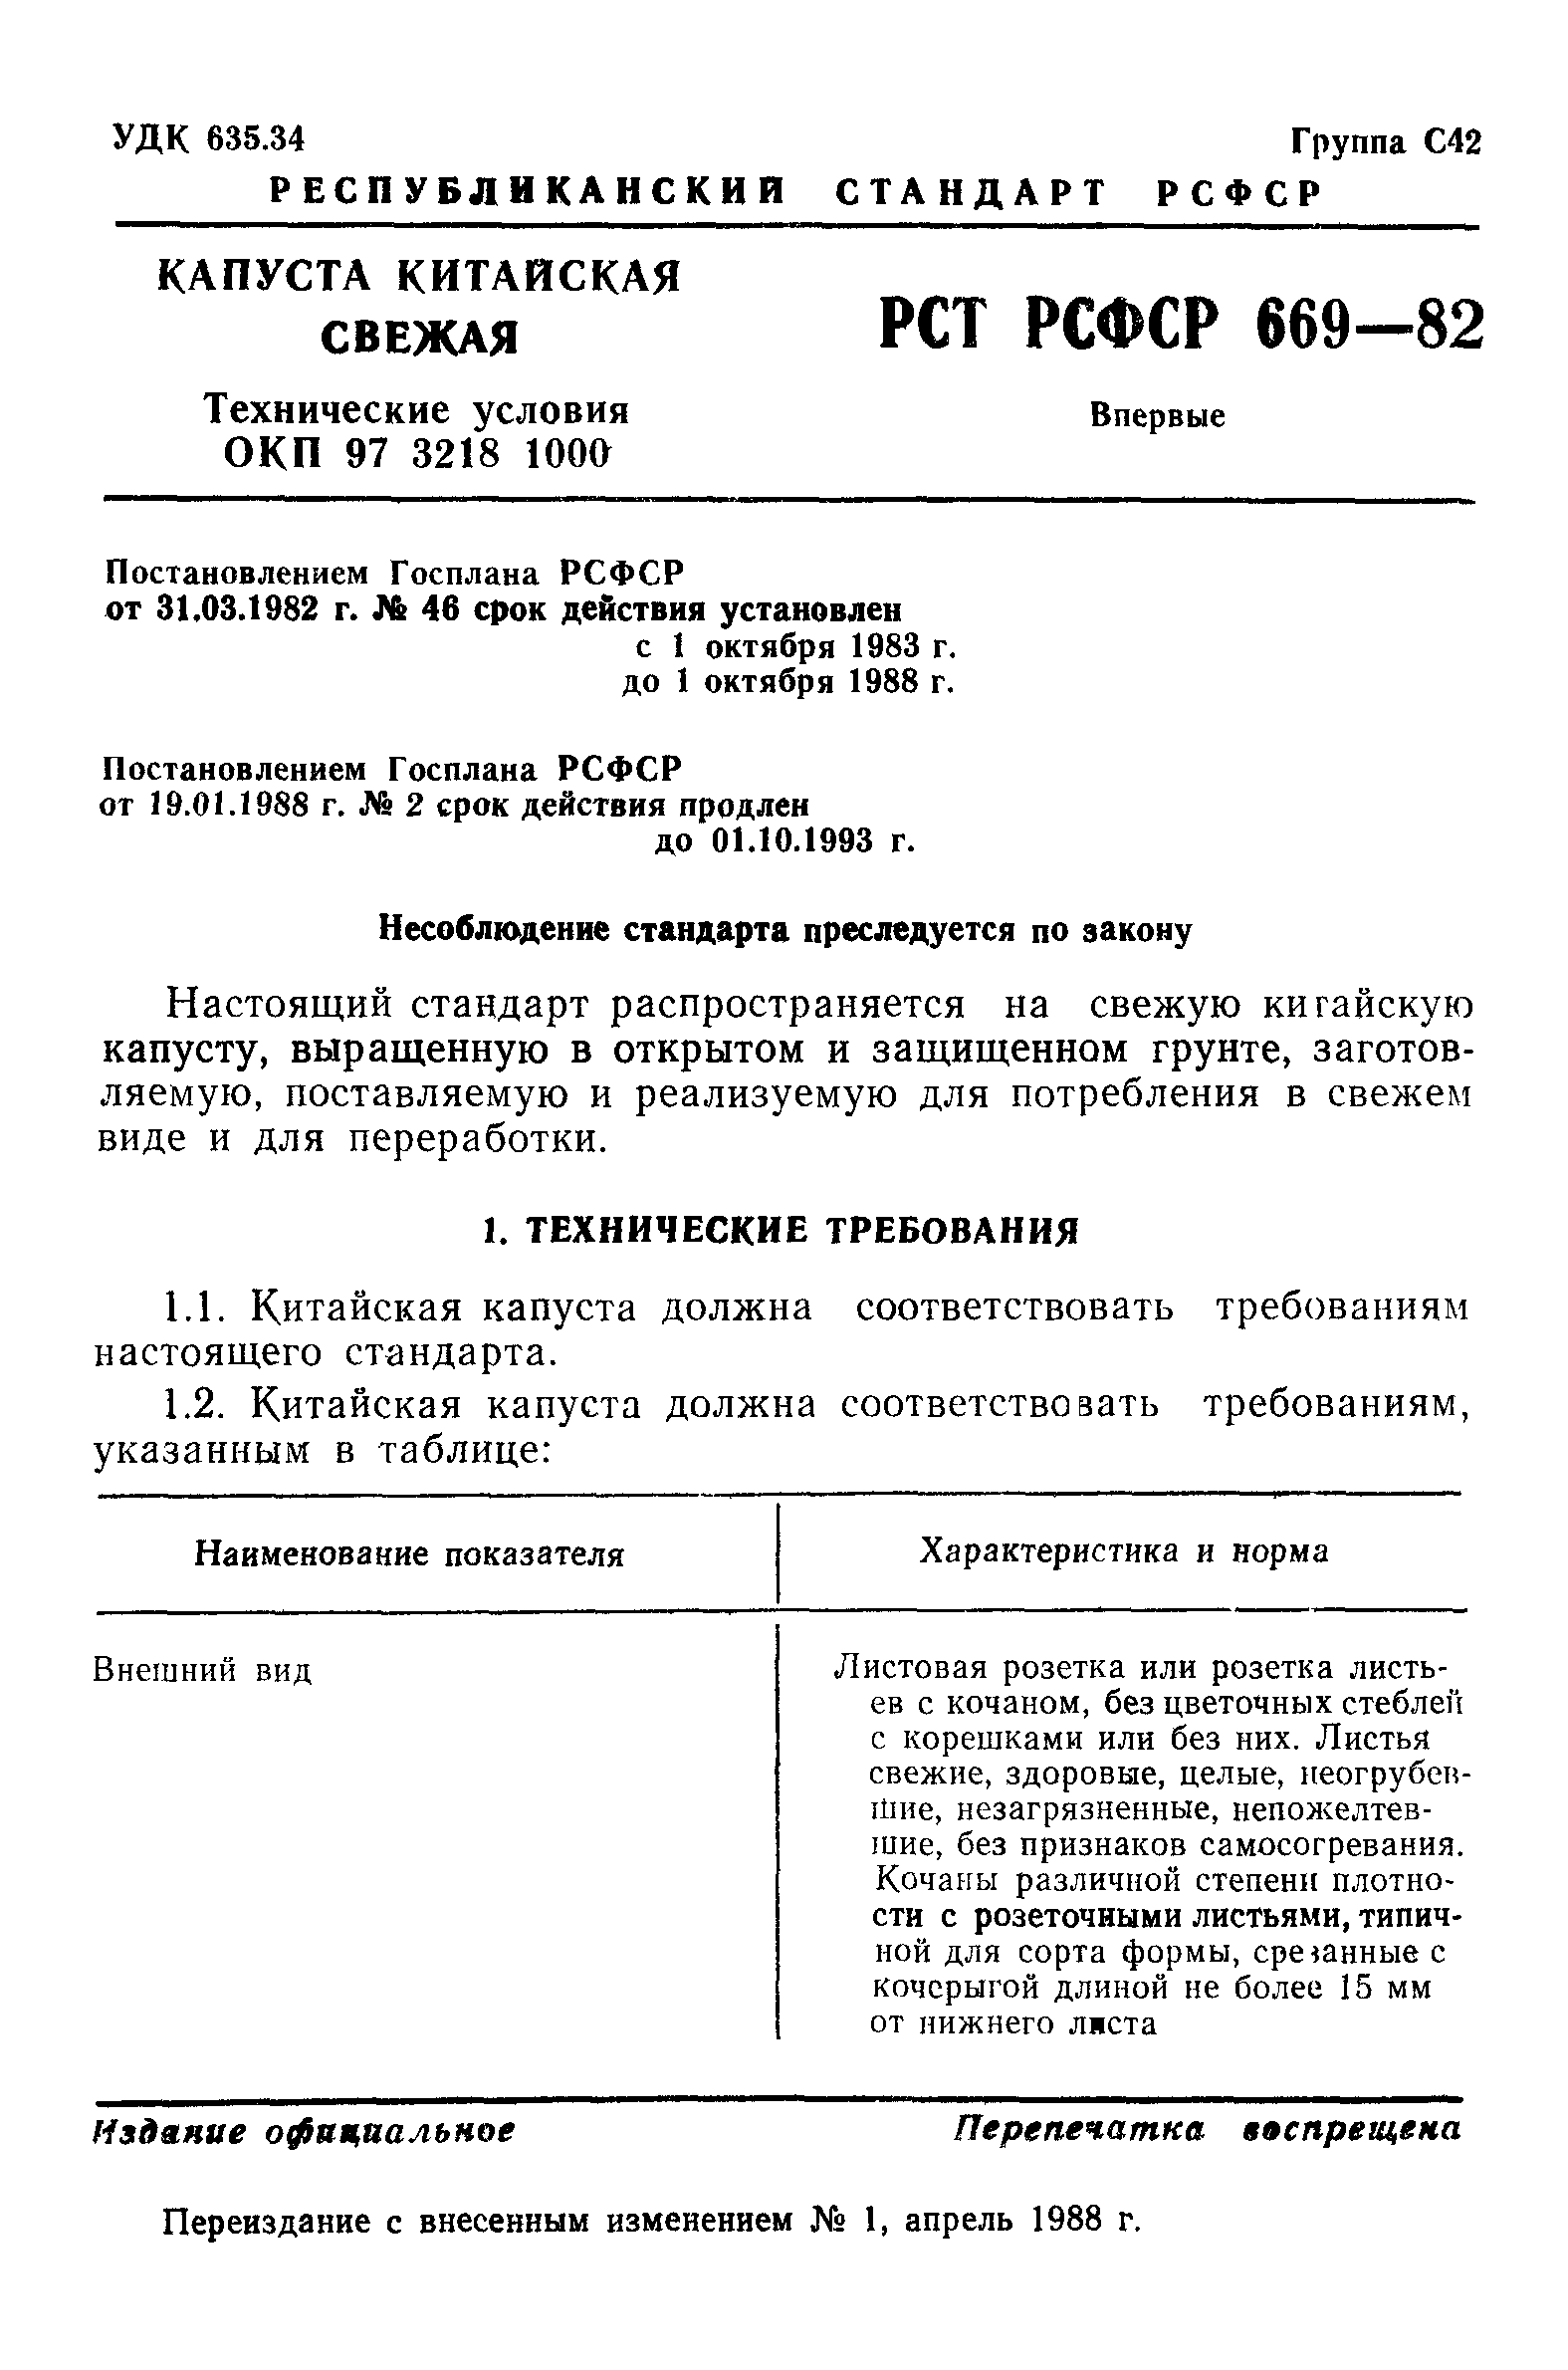 РСТ РСФСР 669-82